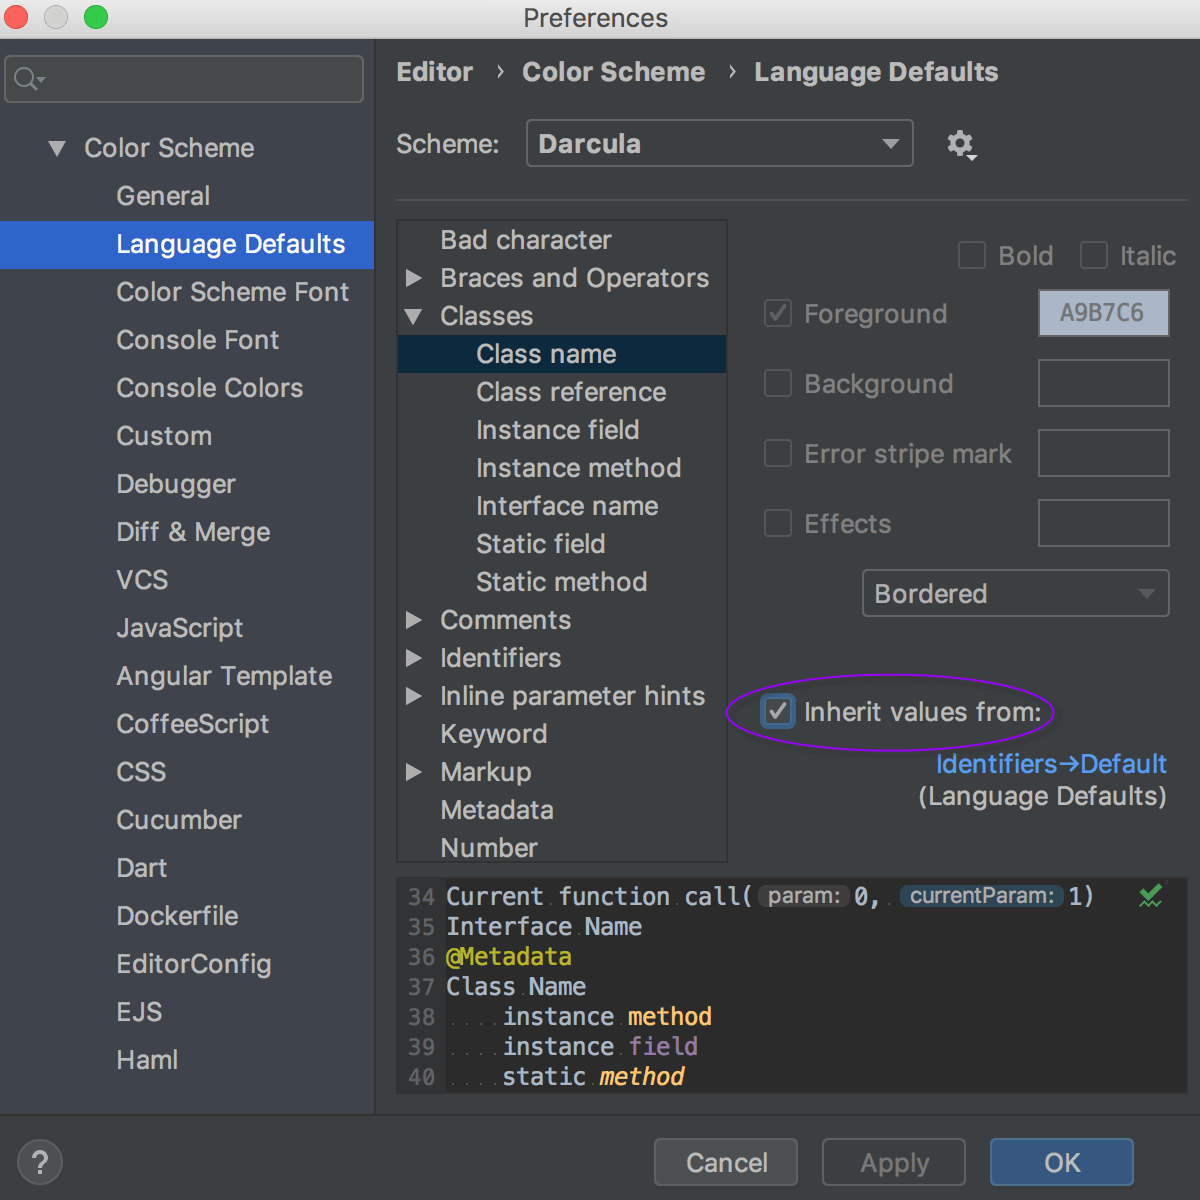 Language Defaults section under Color Scheme settings